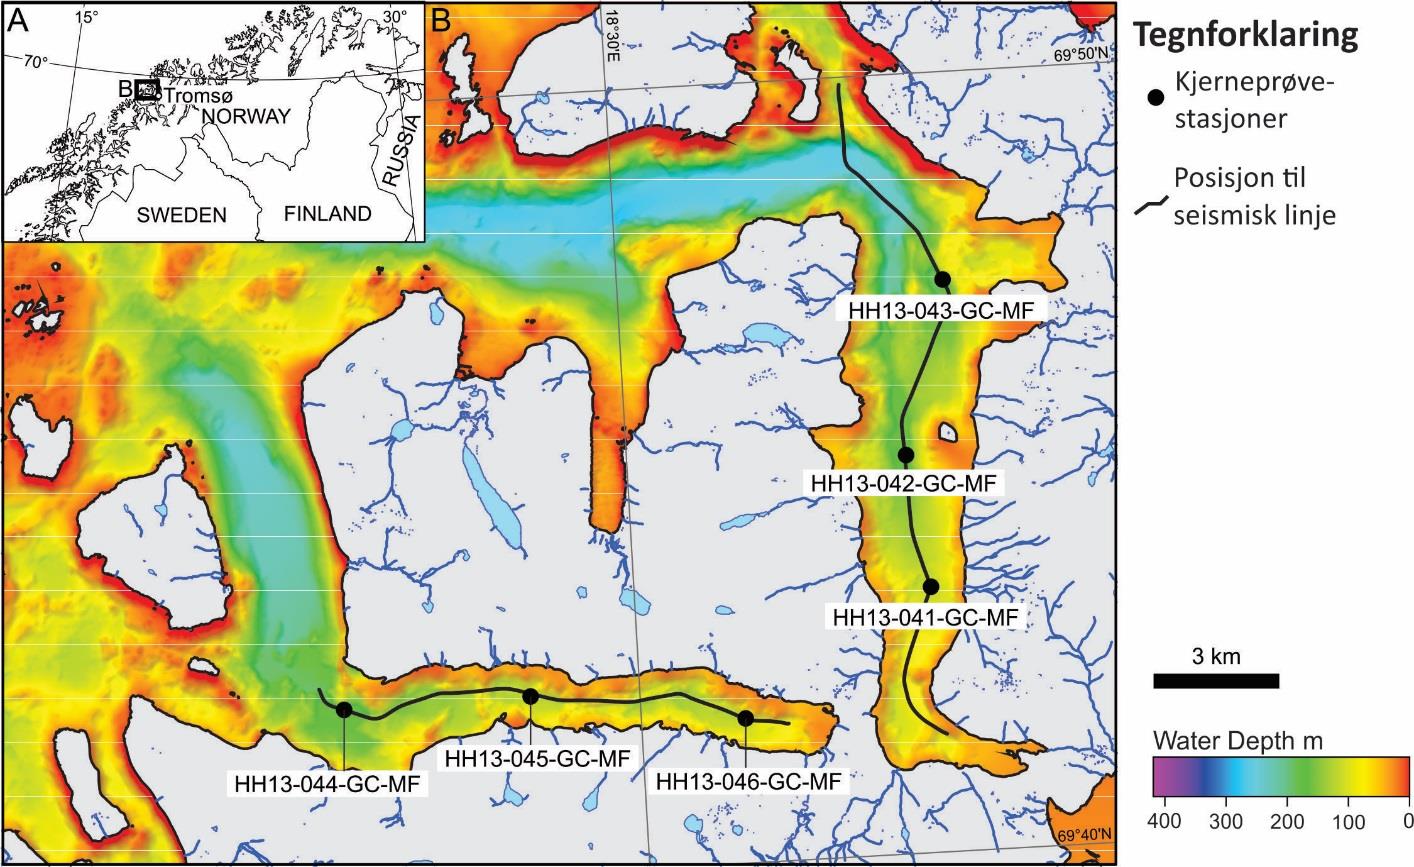 Figur 6.11: A) Lokaliseringen av Ersfjorden og Kaldfjorden i nordlige Skandinavia. B) Posisjonen til kjerneprøvestasjoner og seismisk linje i Kaldfjorden, og nabofjorden Ersfjorden.